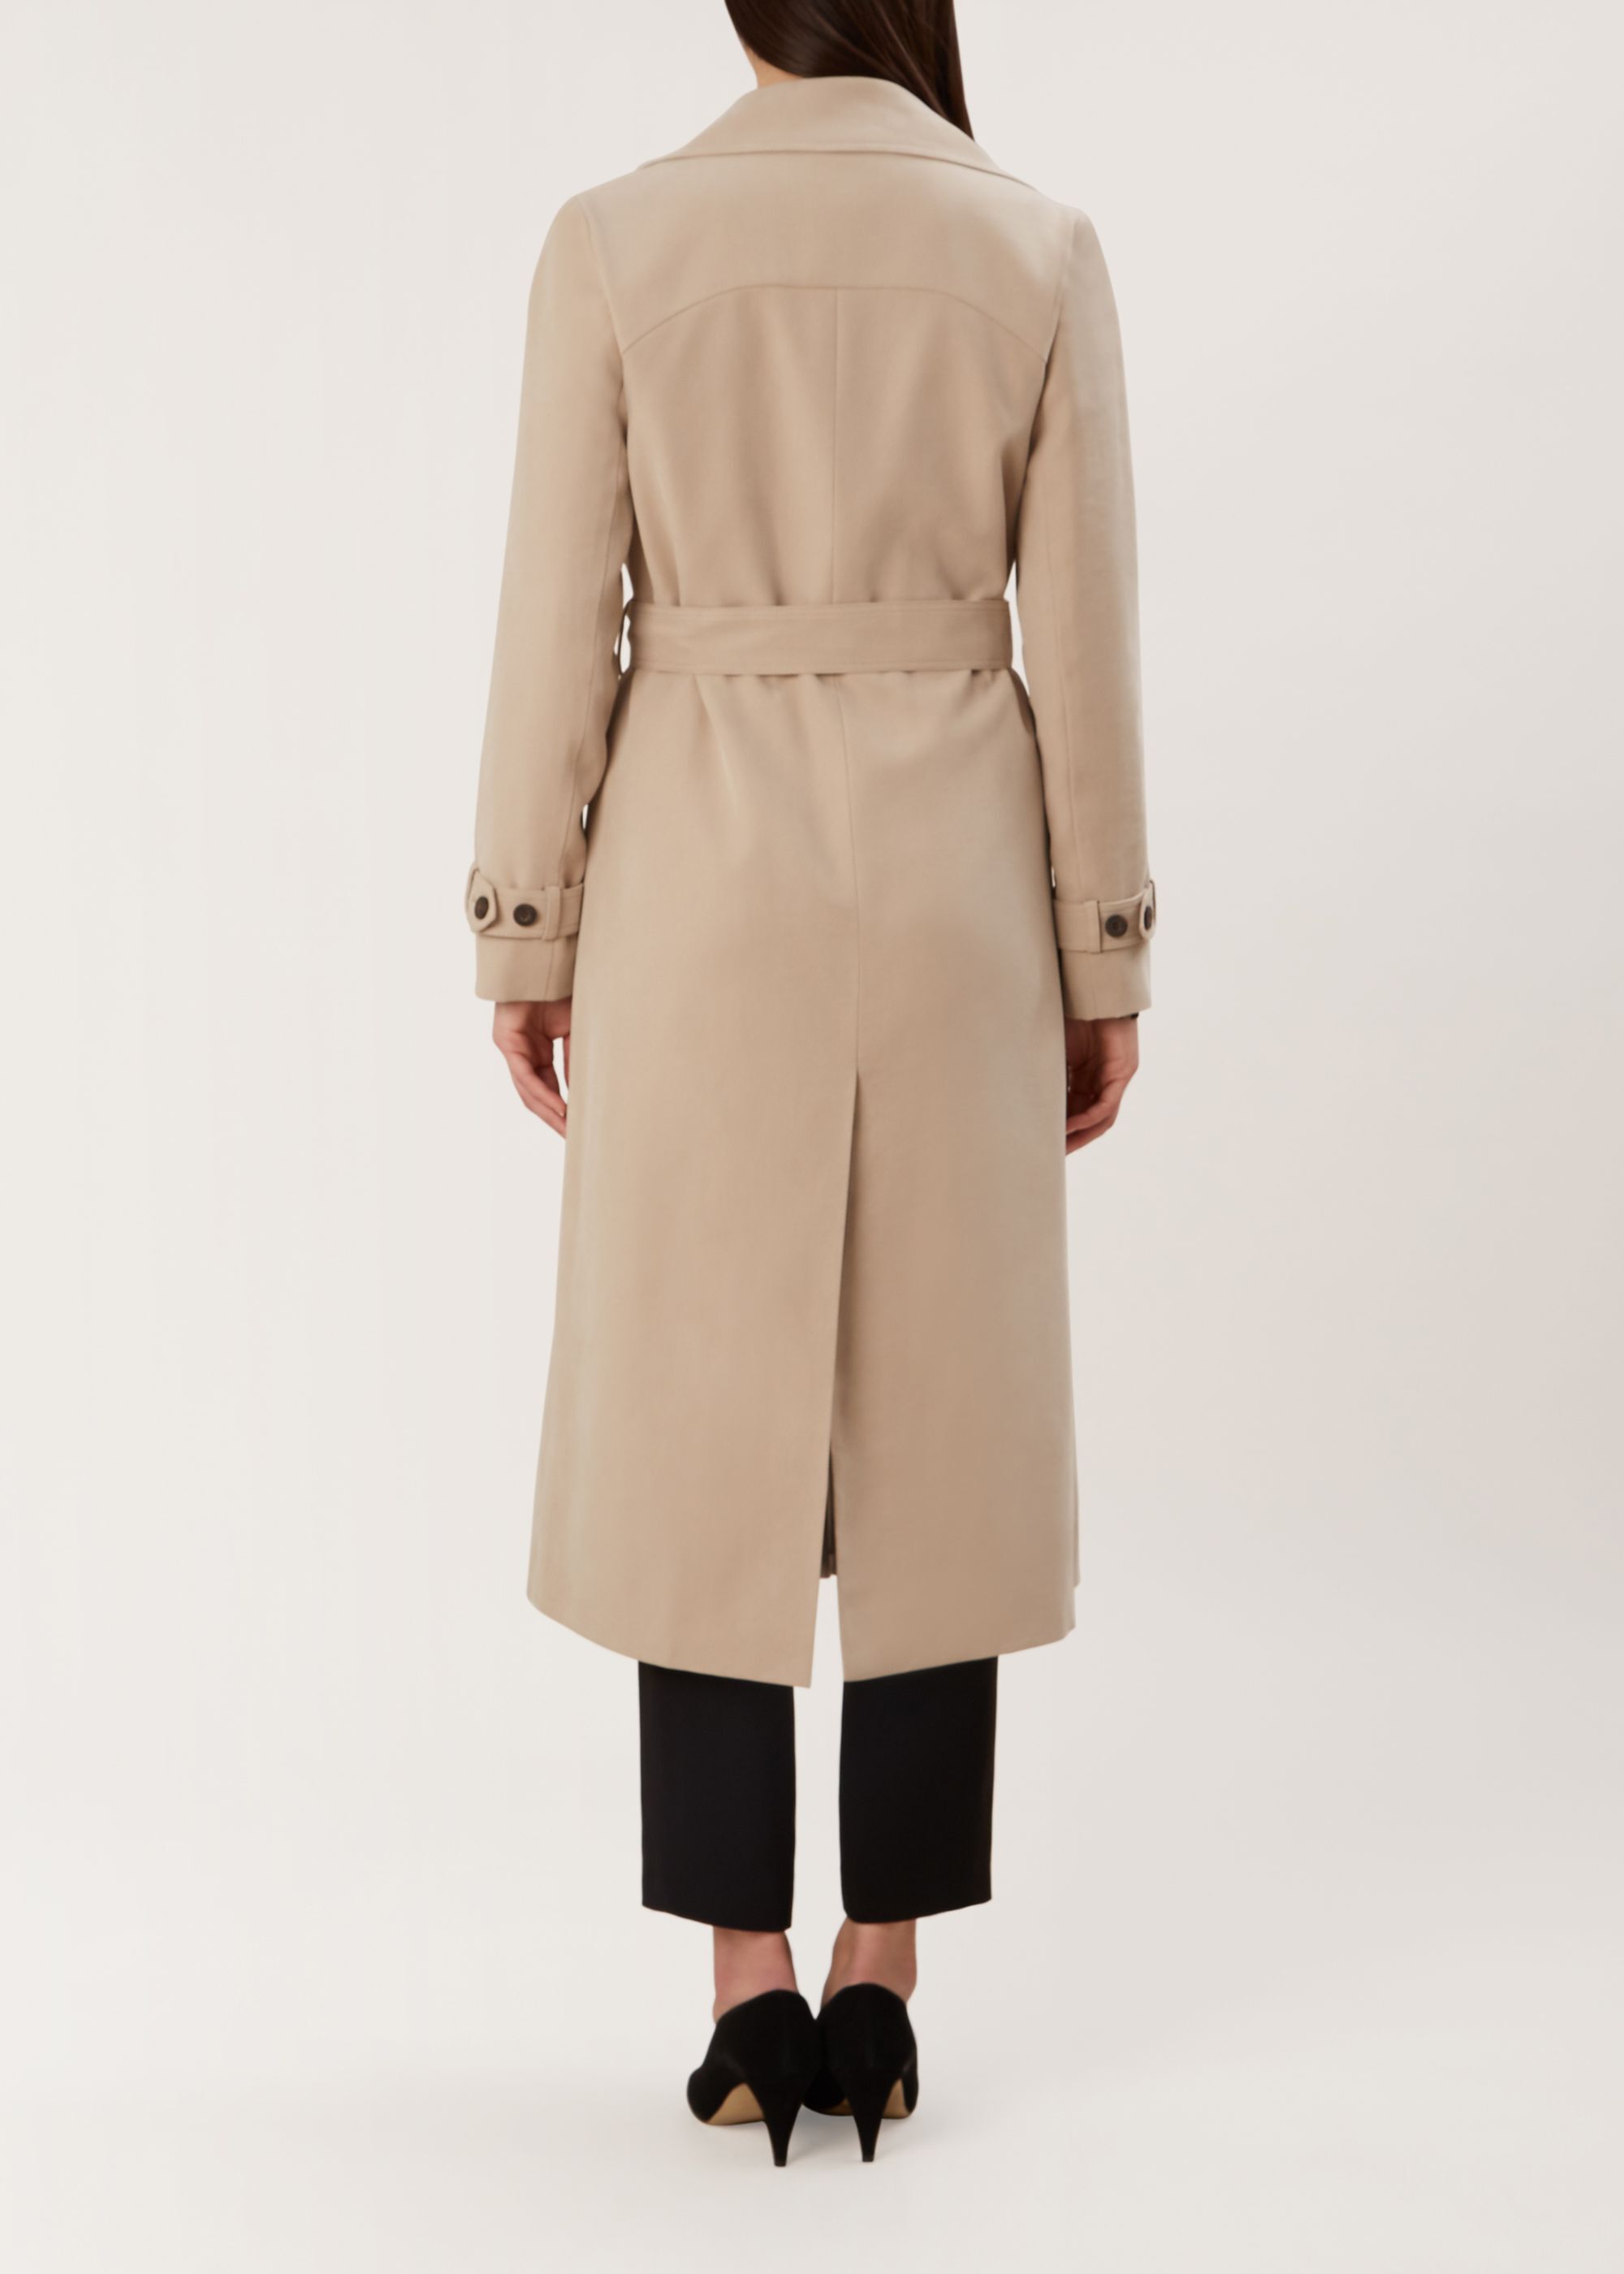 HOBBS ALLIE TRENCH Coat Knee Trench Coat Long Sleeve £123.00 - PicClick UK